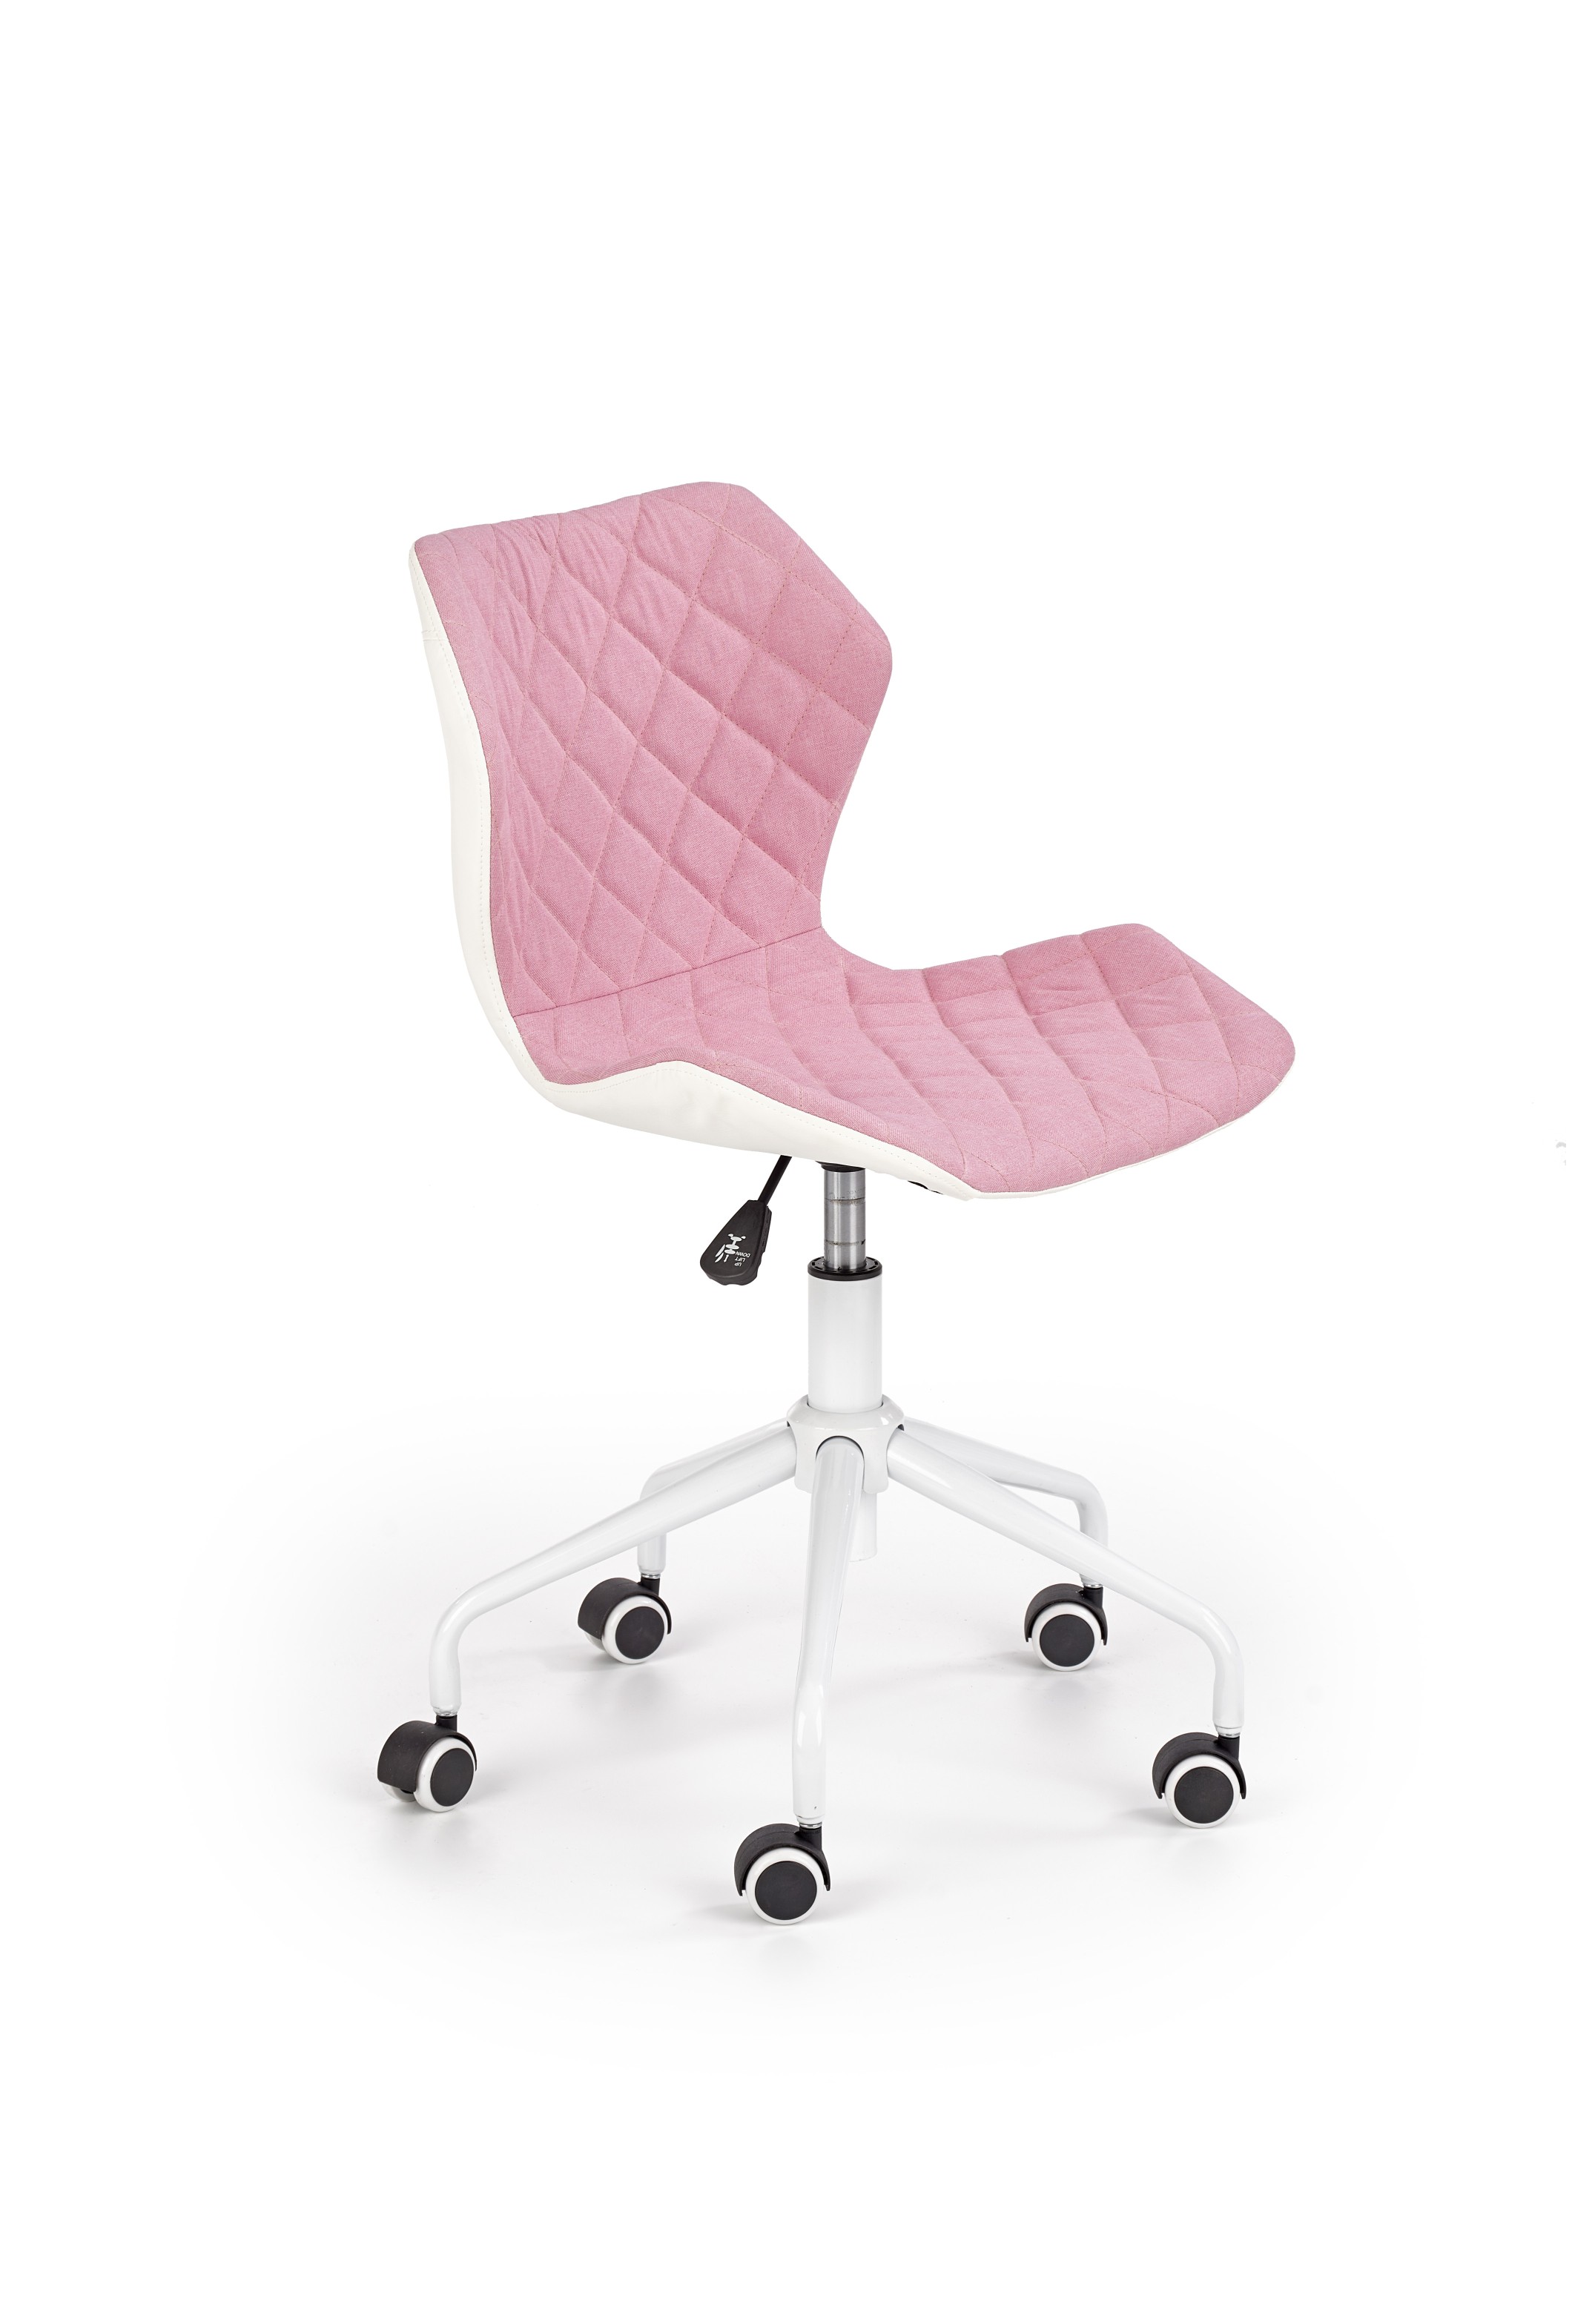 Židle MATRIX na bílé kolečkové podstavě - růžová